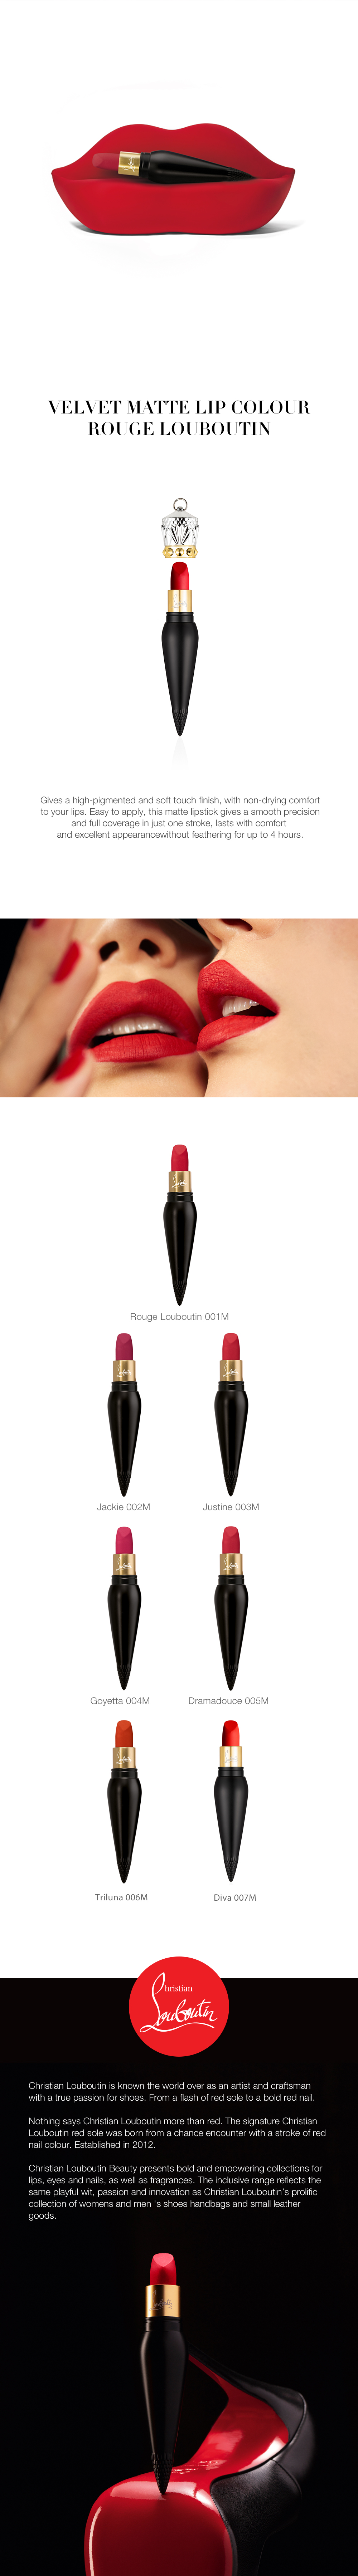 Christian Louboutin Beauty Velvet Matte Lip Colour - Goyetta